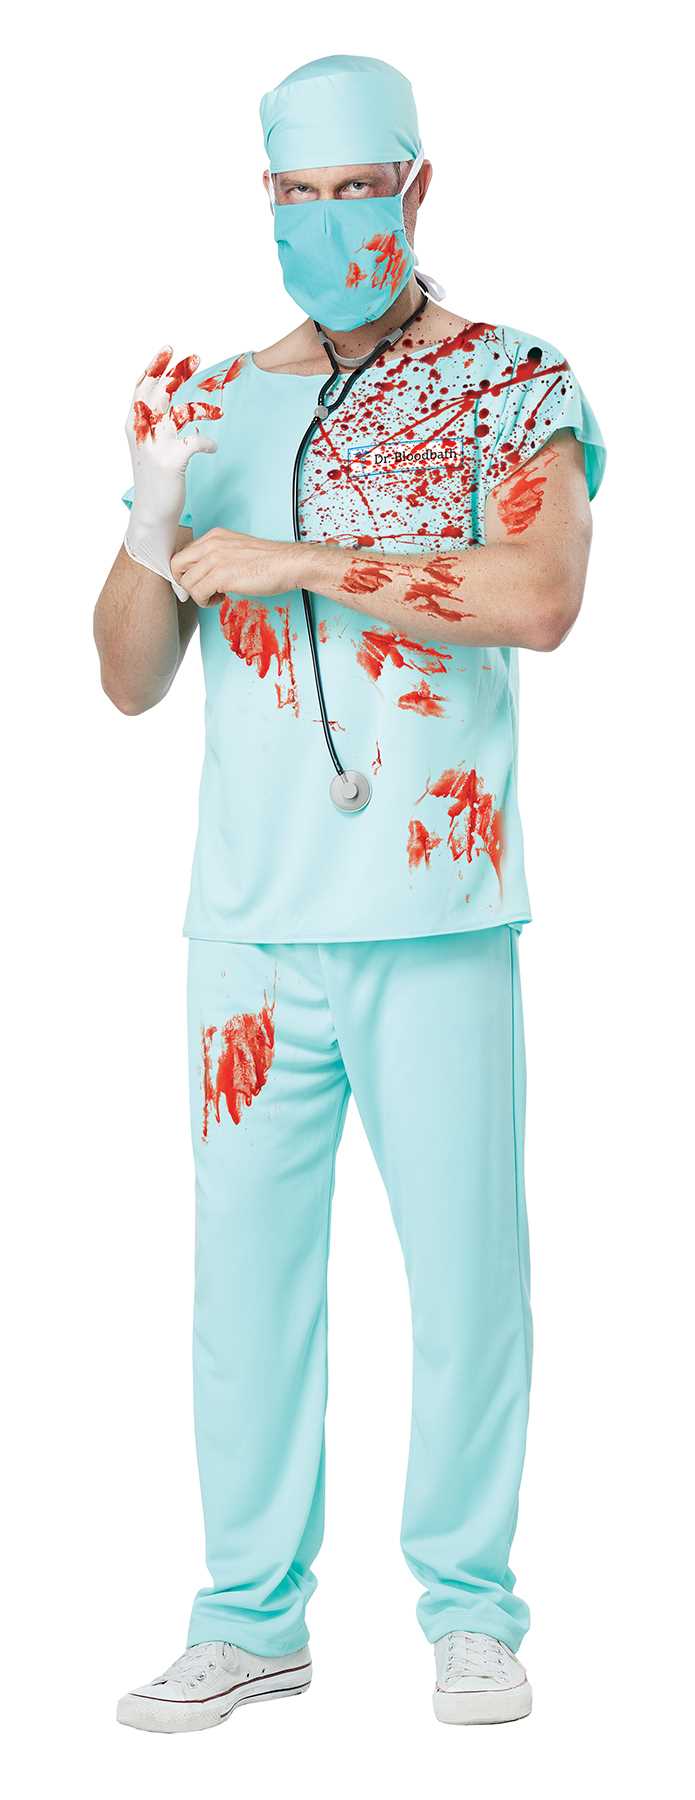 Dr. Bloodbath